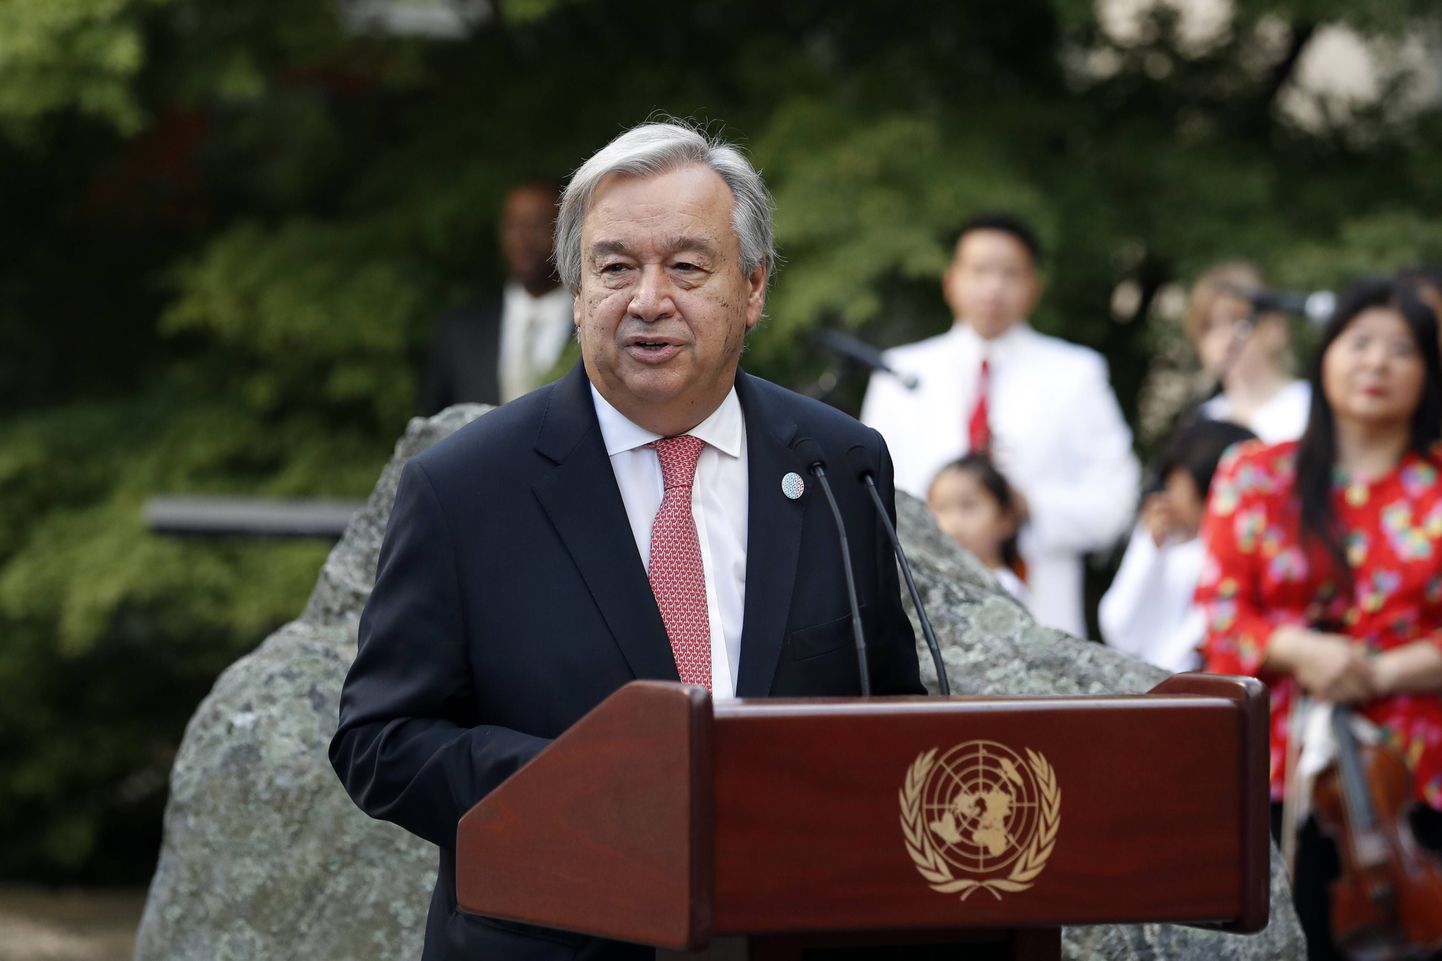 ÜRO peasekretär Antonio Guterres esineb maailmaorganisatsiooni peakorteris New Yorgis maailmarahu päeval.